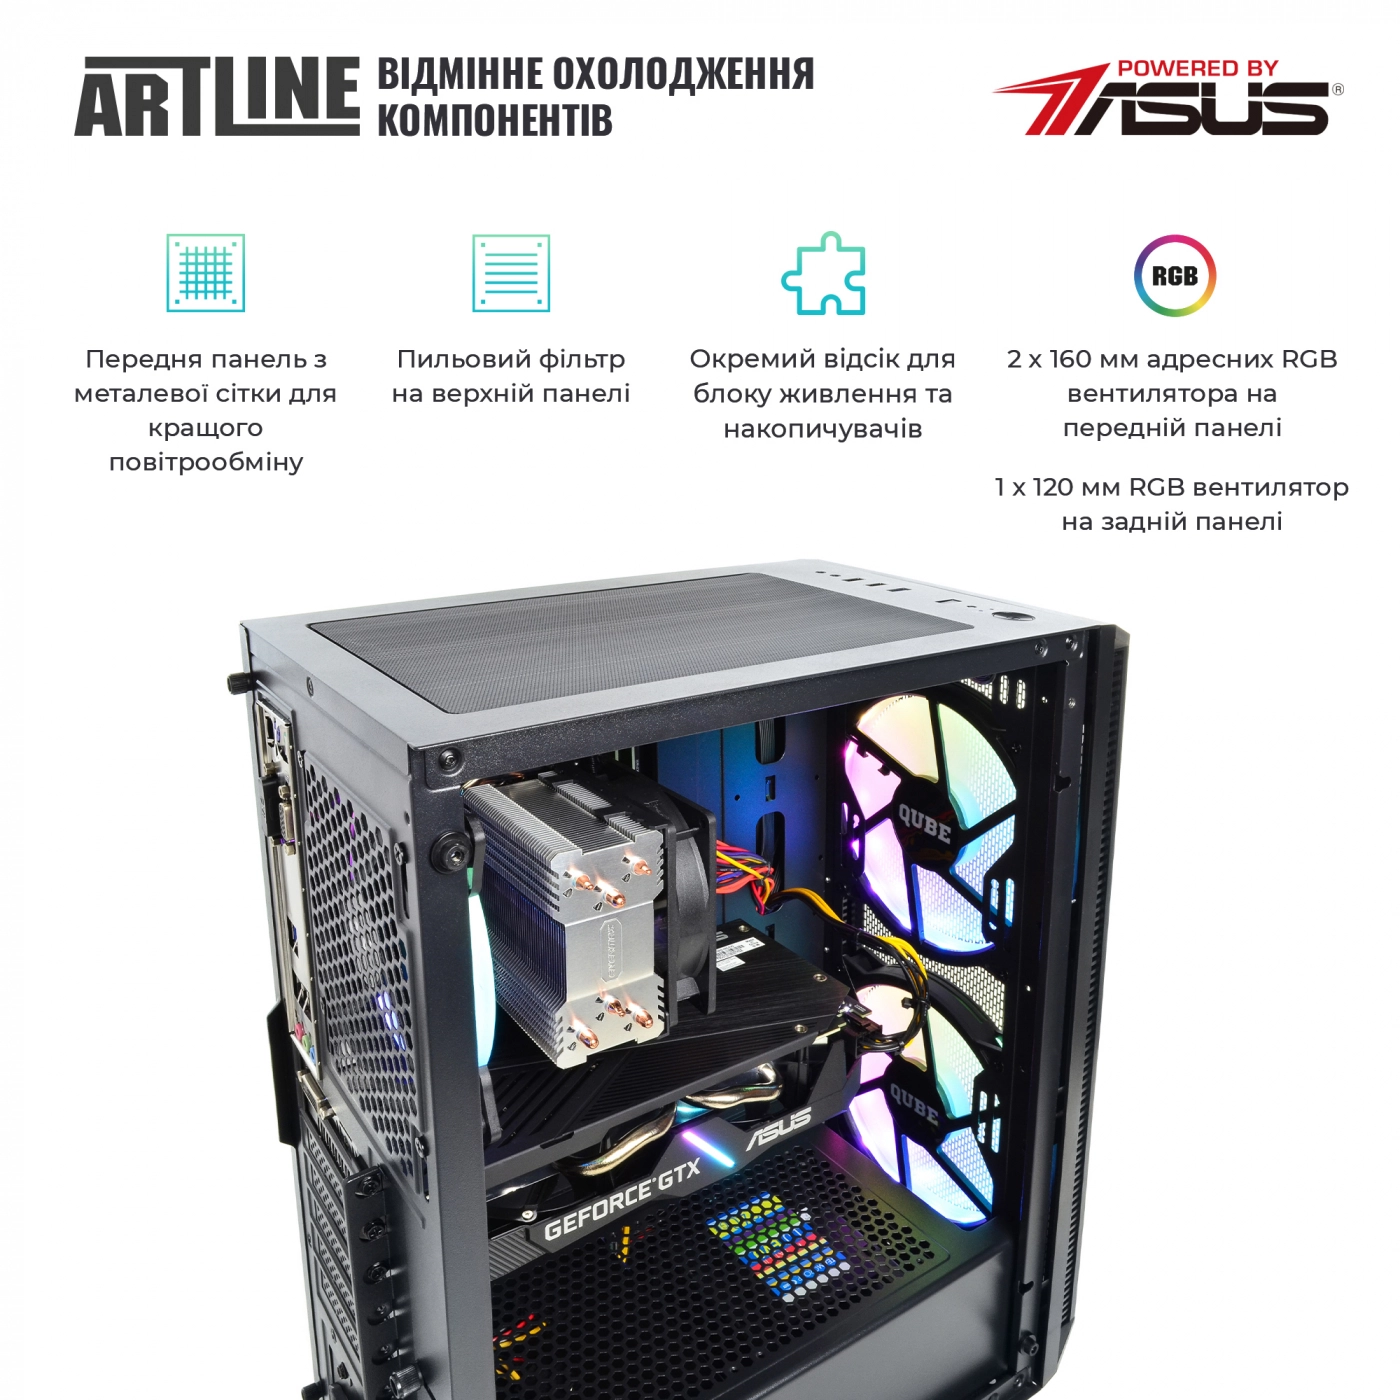 Купить Компьютер ARTLINE Gaming X65v32 - фото 2